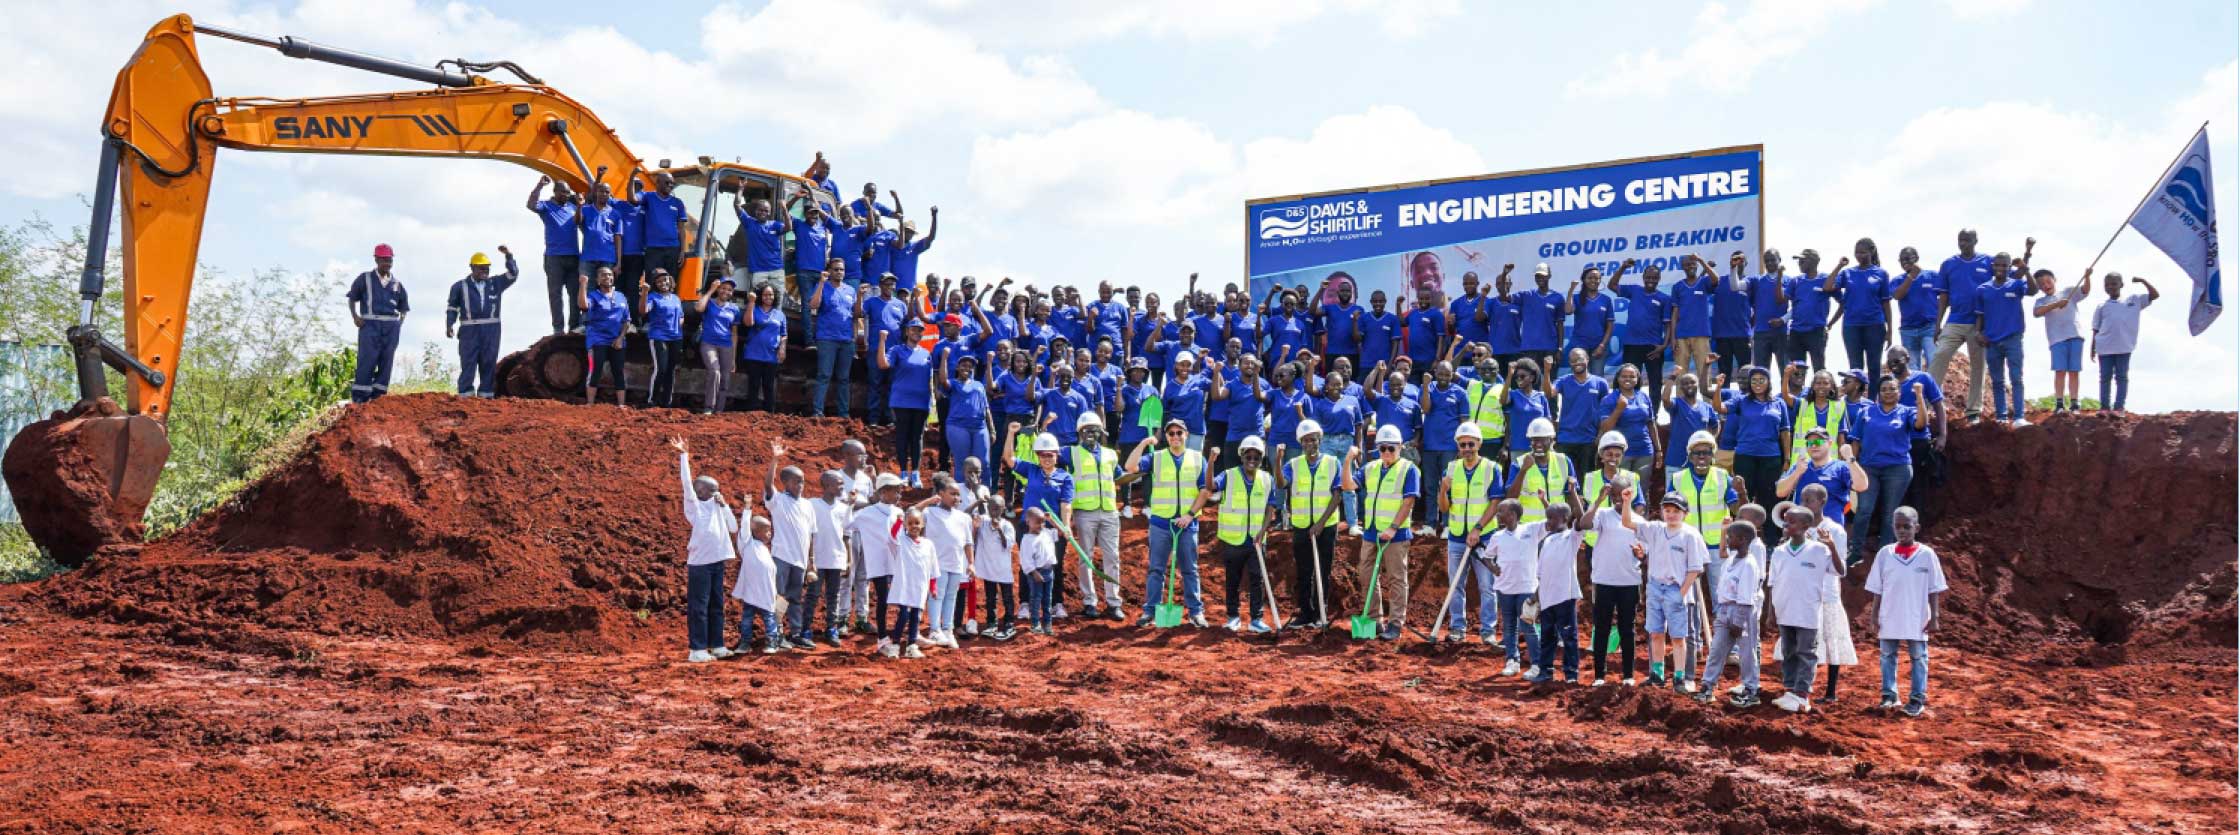 Davis & Shirtliff builds an Engineering center in Tatu